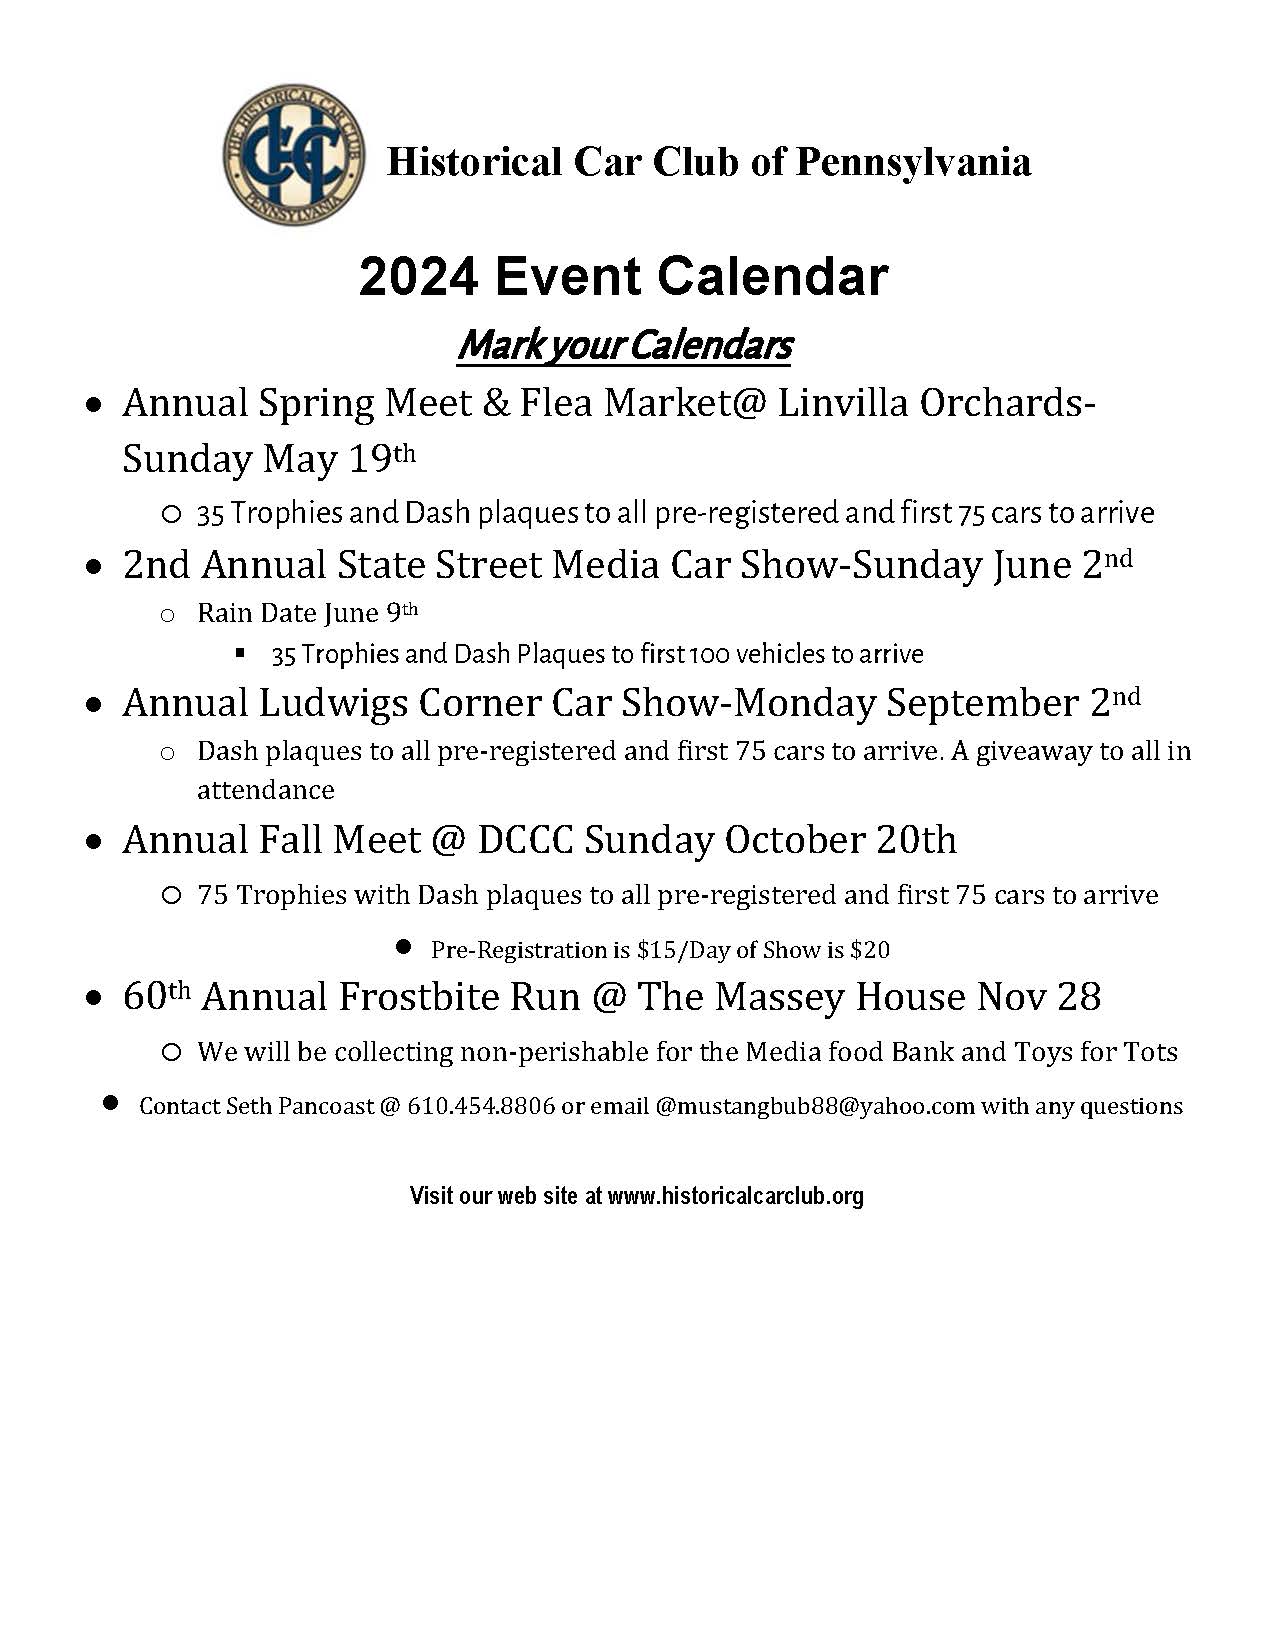 2024 HCCP Event Schedule